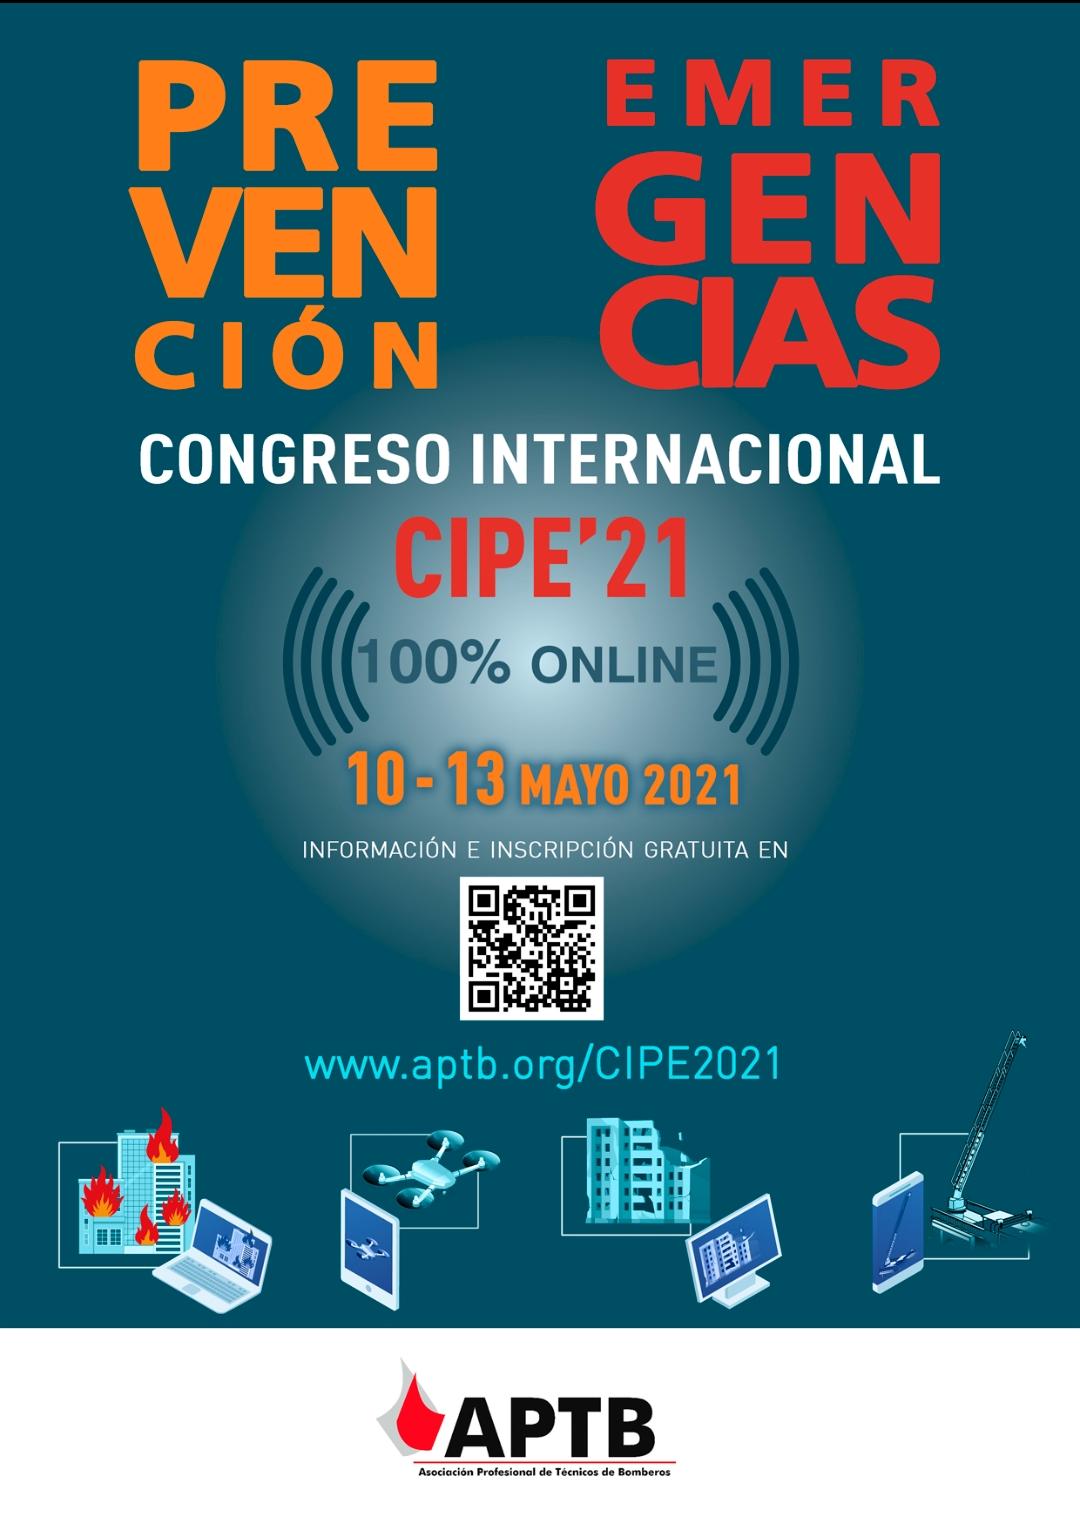 APTB REALIZARÁ EN FORMATO ONLINE EL III CONGRESO INTERNACIONAL DE #PREVENCIÓN Y #EMERGENCIAS CIPE´21 #CIPE21Emergencias #CongresoEmergencias21